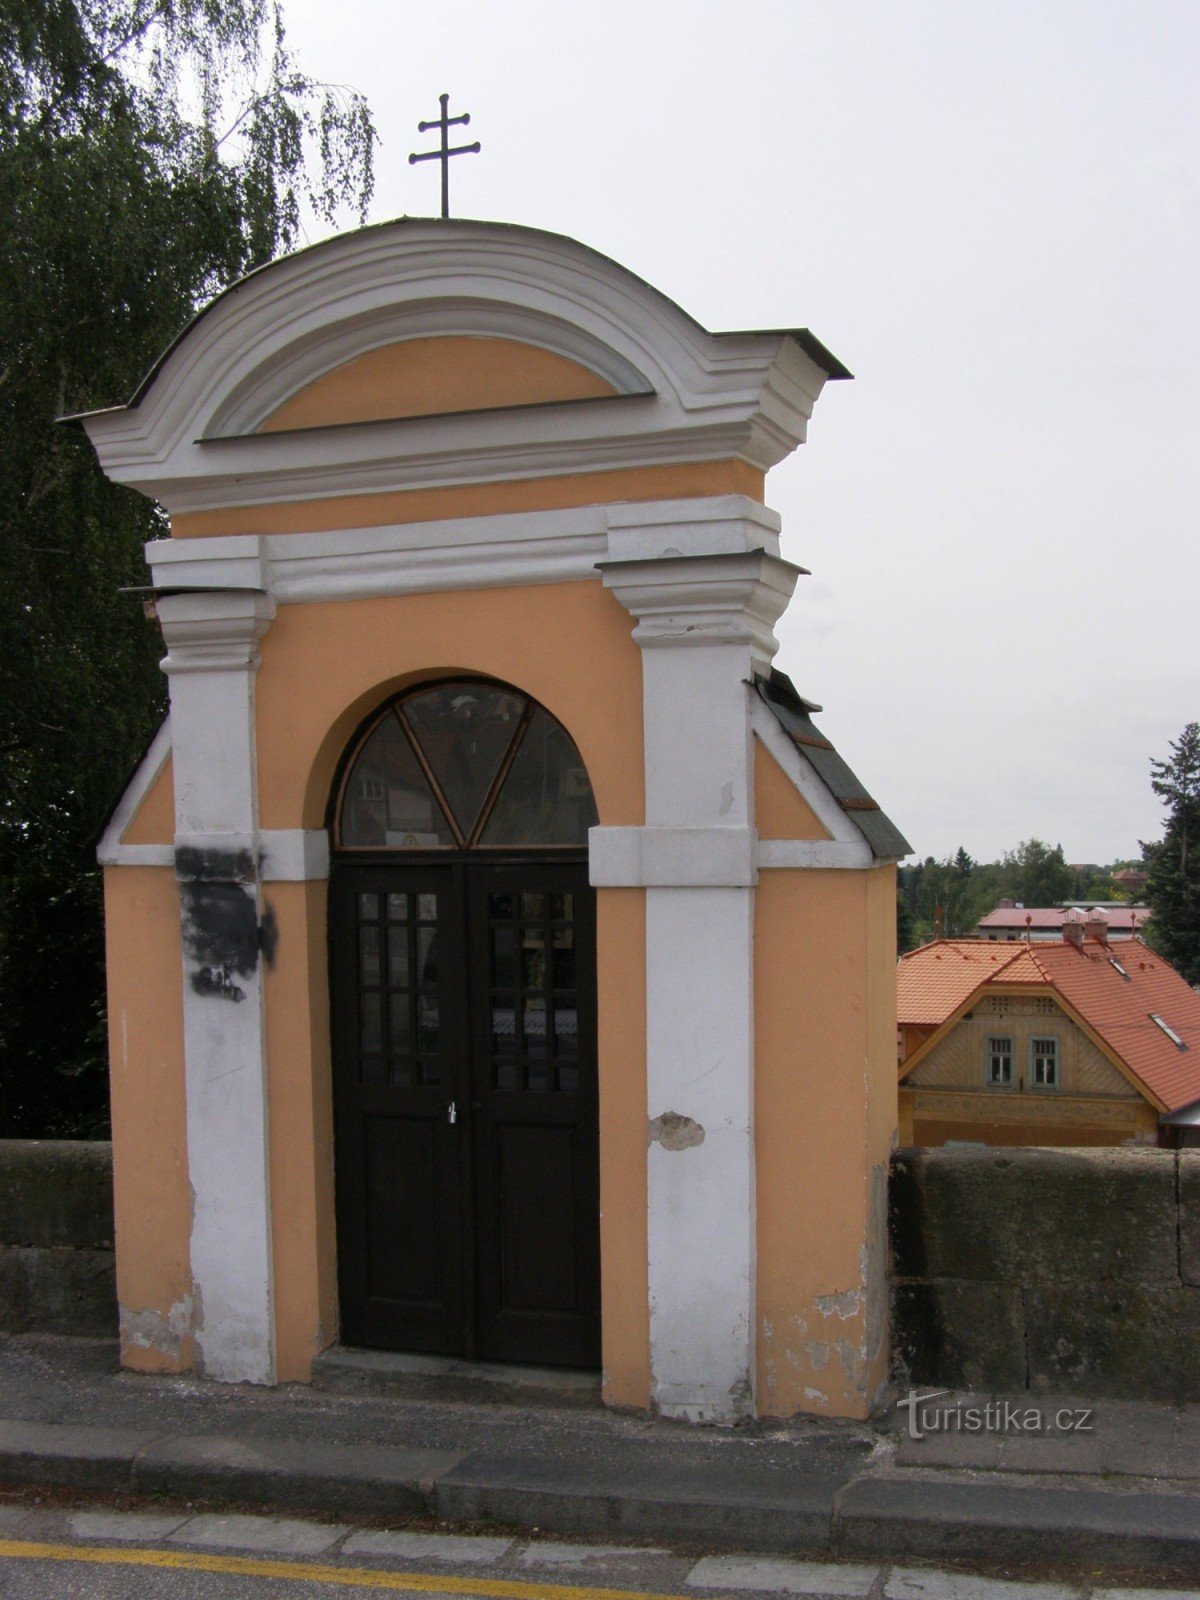 Jaroměř - most z kaplicą